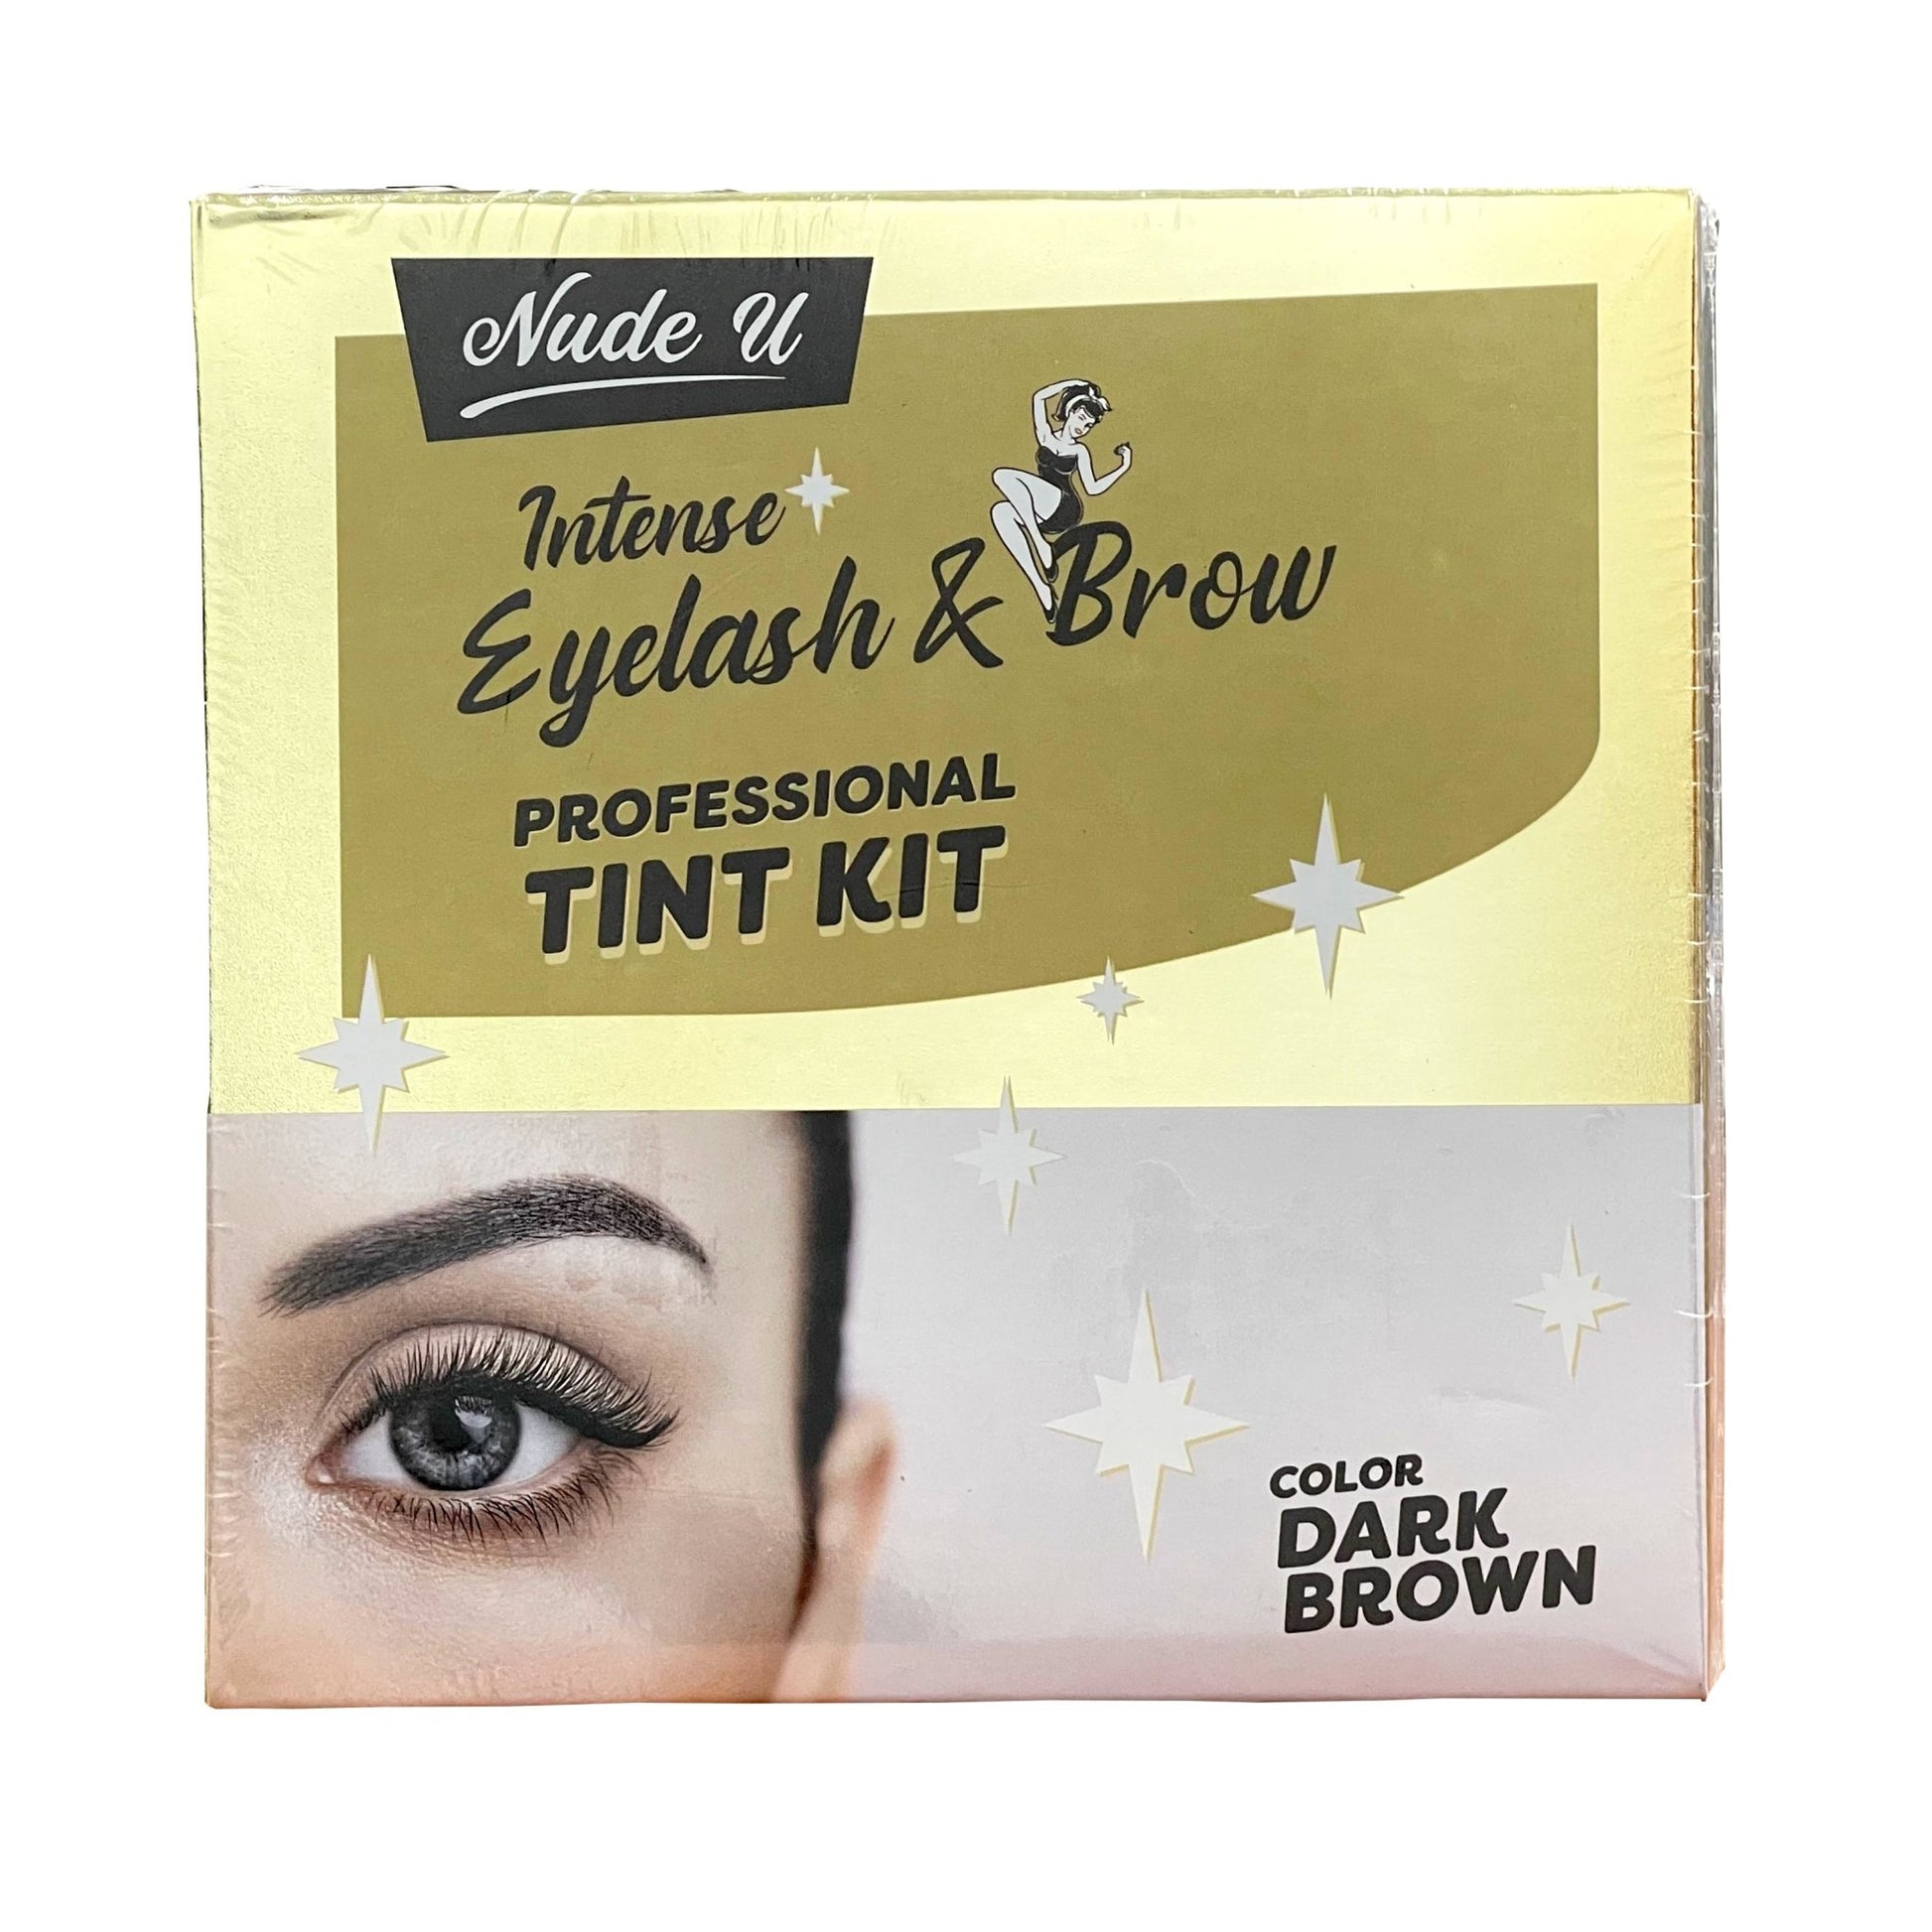 Intense Eyelash & Brow, Dark Brown, Professional Tint Kit